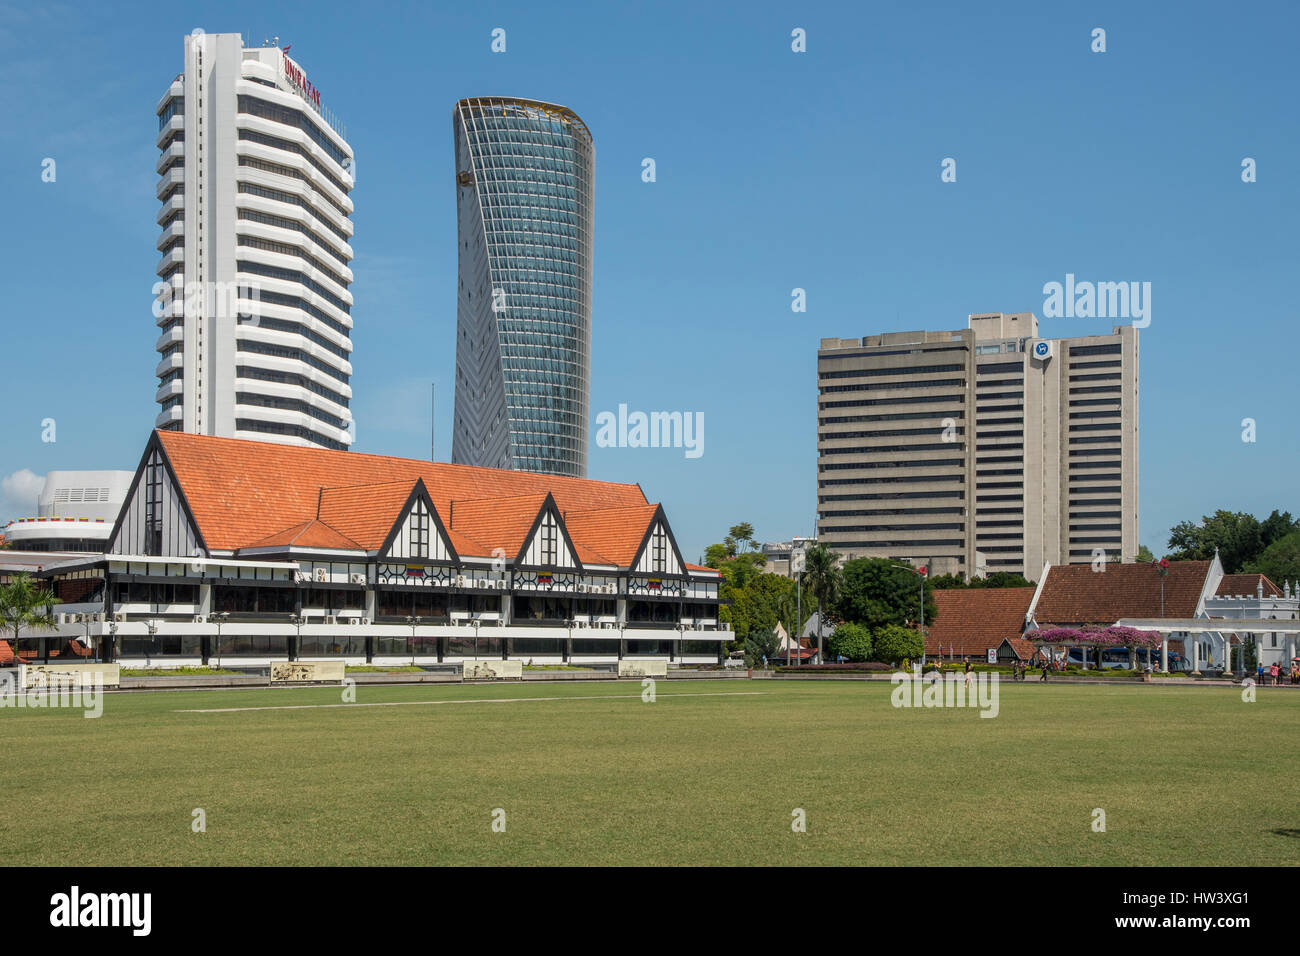 Cricket Ground, Merdeka Square, Kuala Lumpur, Malaysia Stock Photo